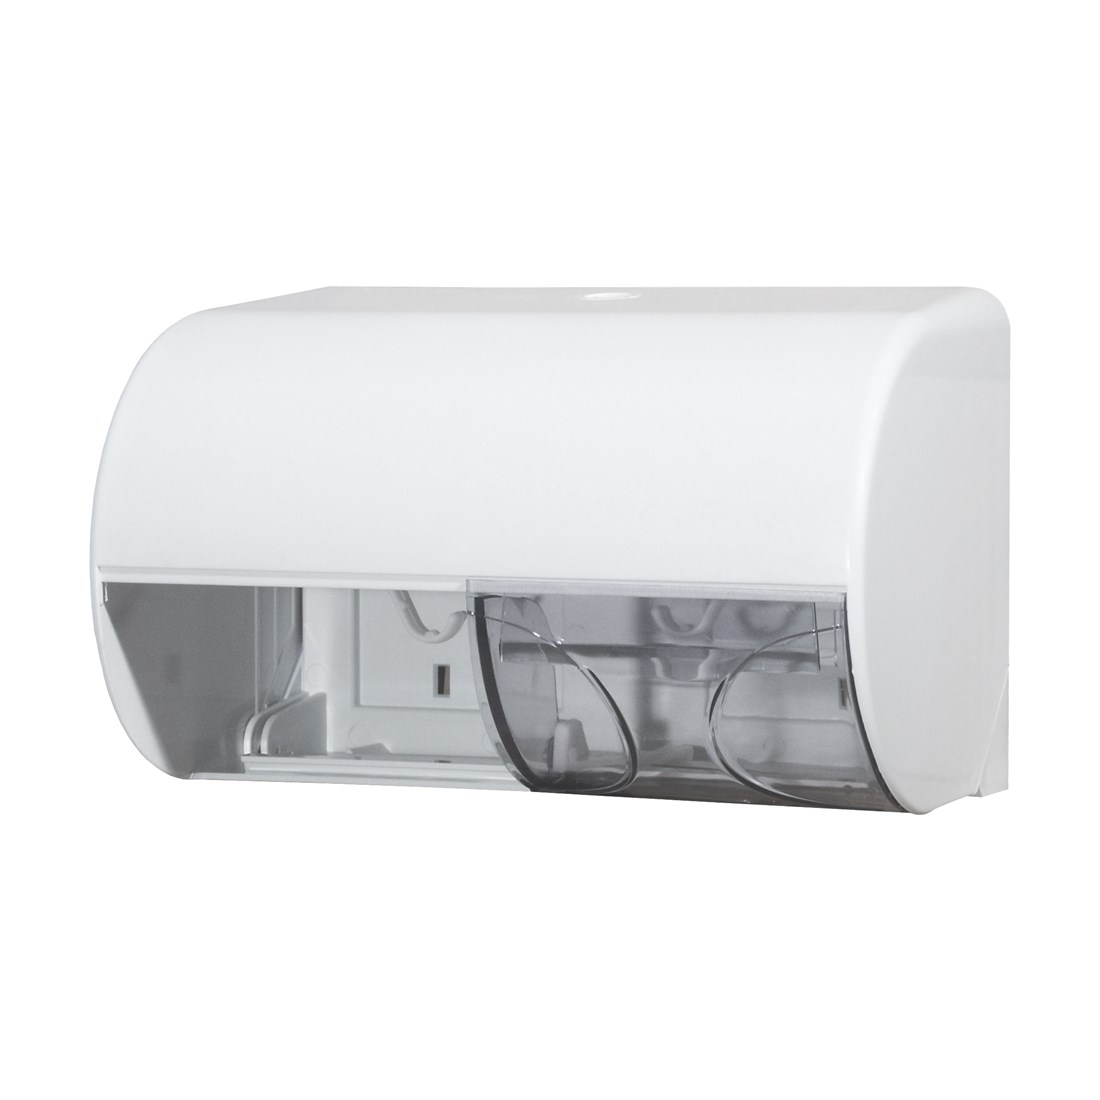 Toiletpapierdispenser horizontaal duo, kleur wit